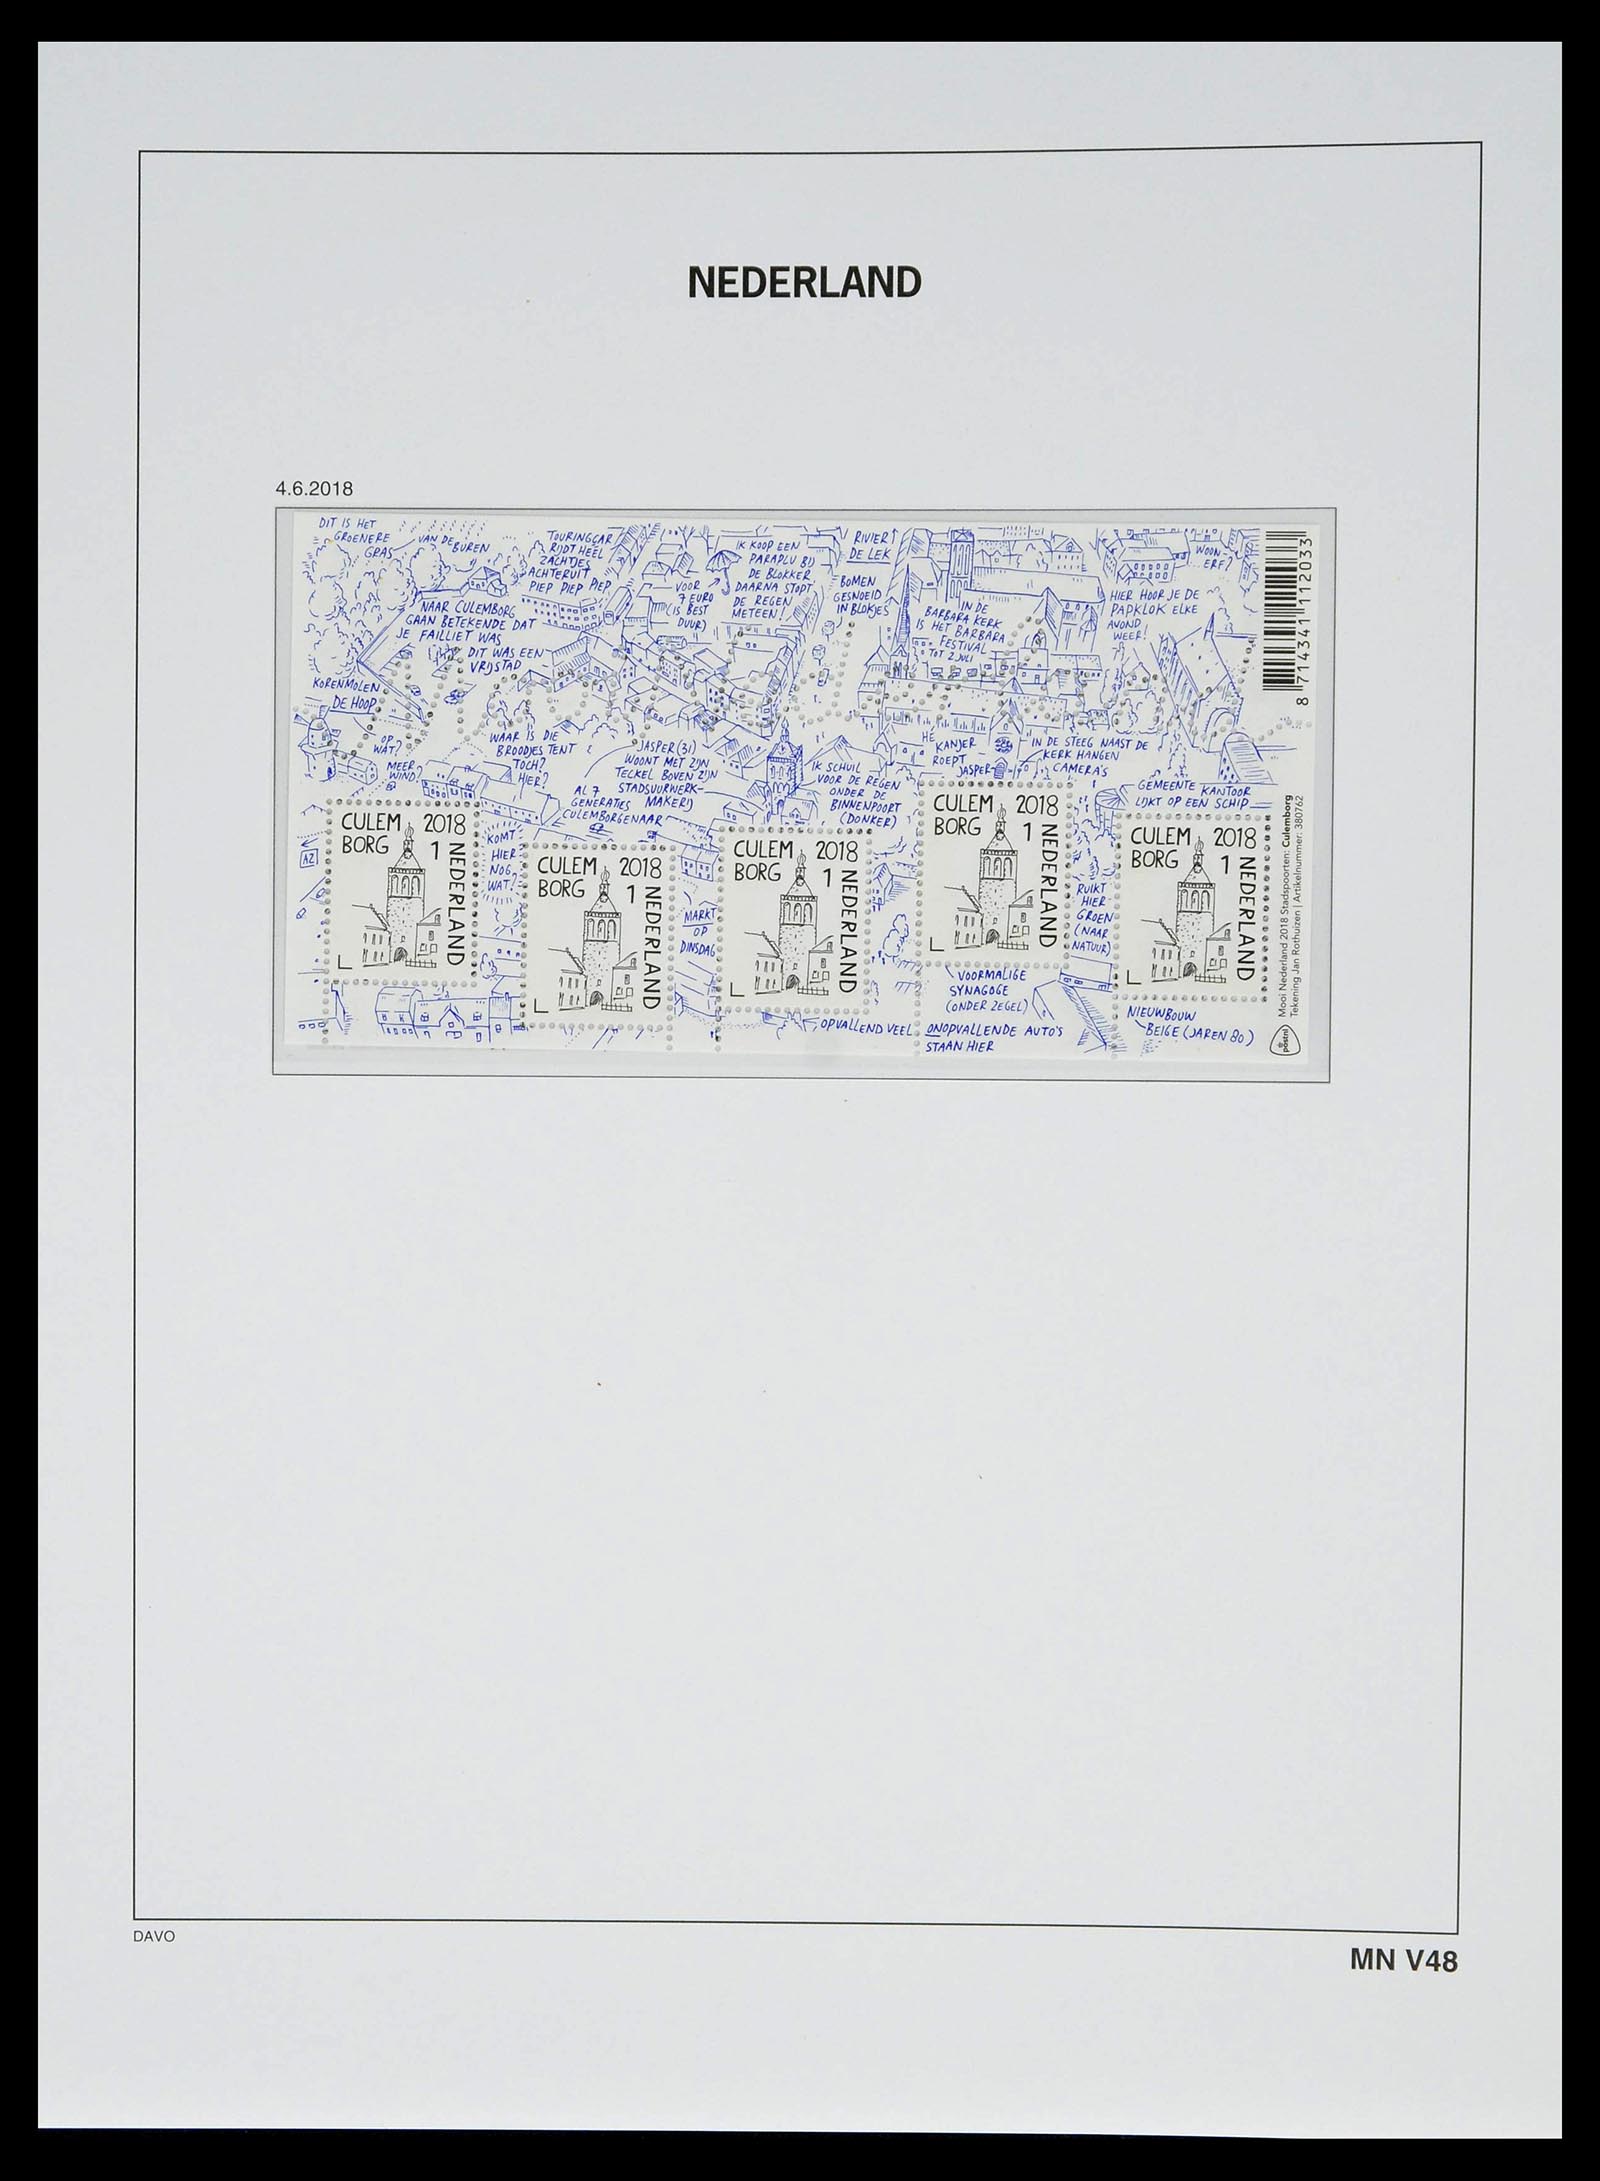 39134 0267 - Stamp collection 39134 Netherlands sheetlets 1992-2019!